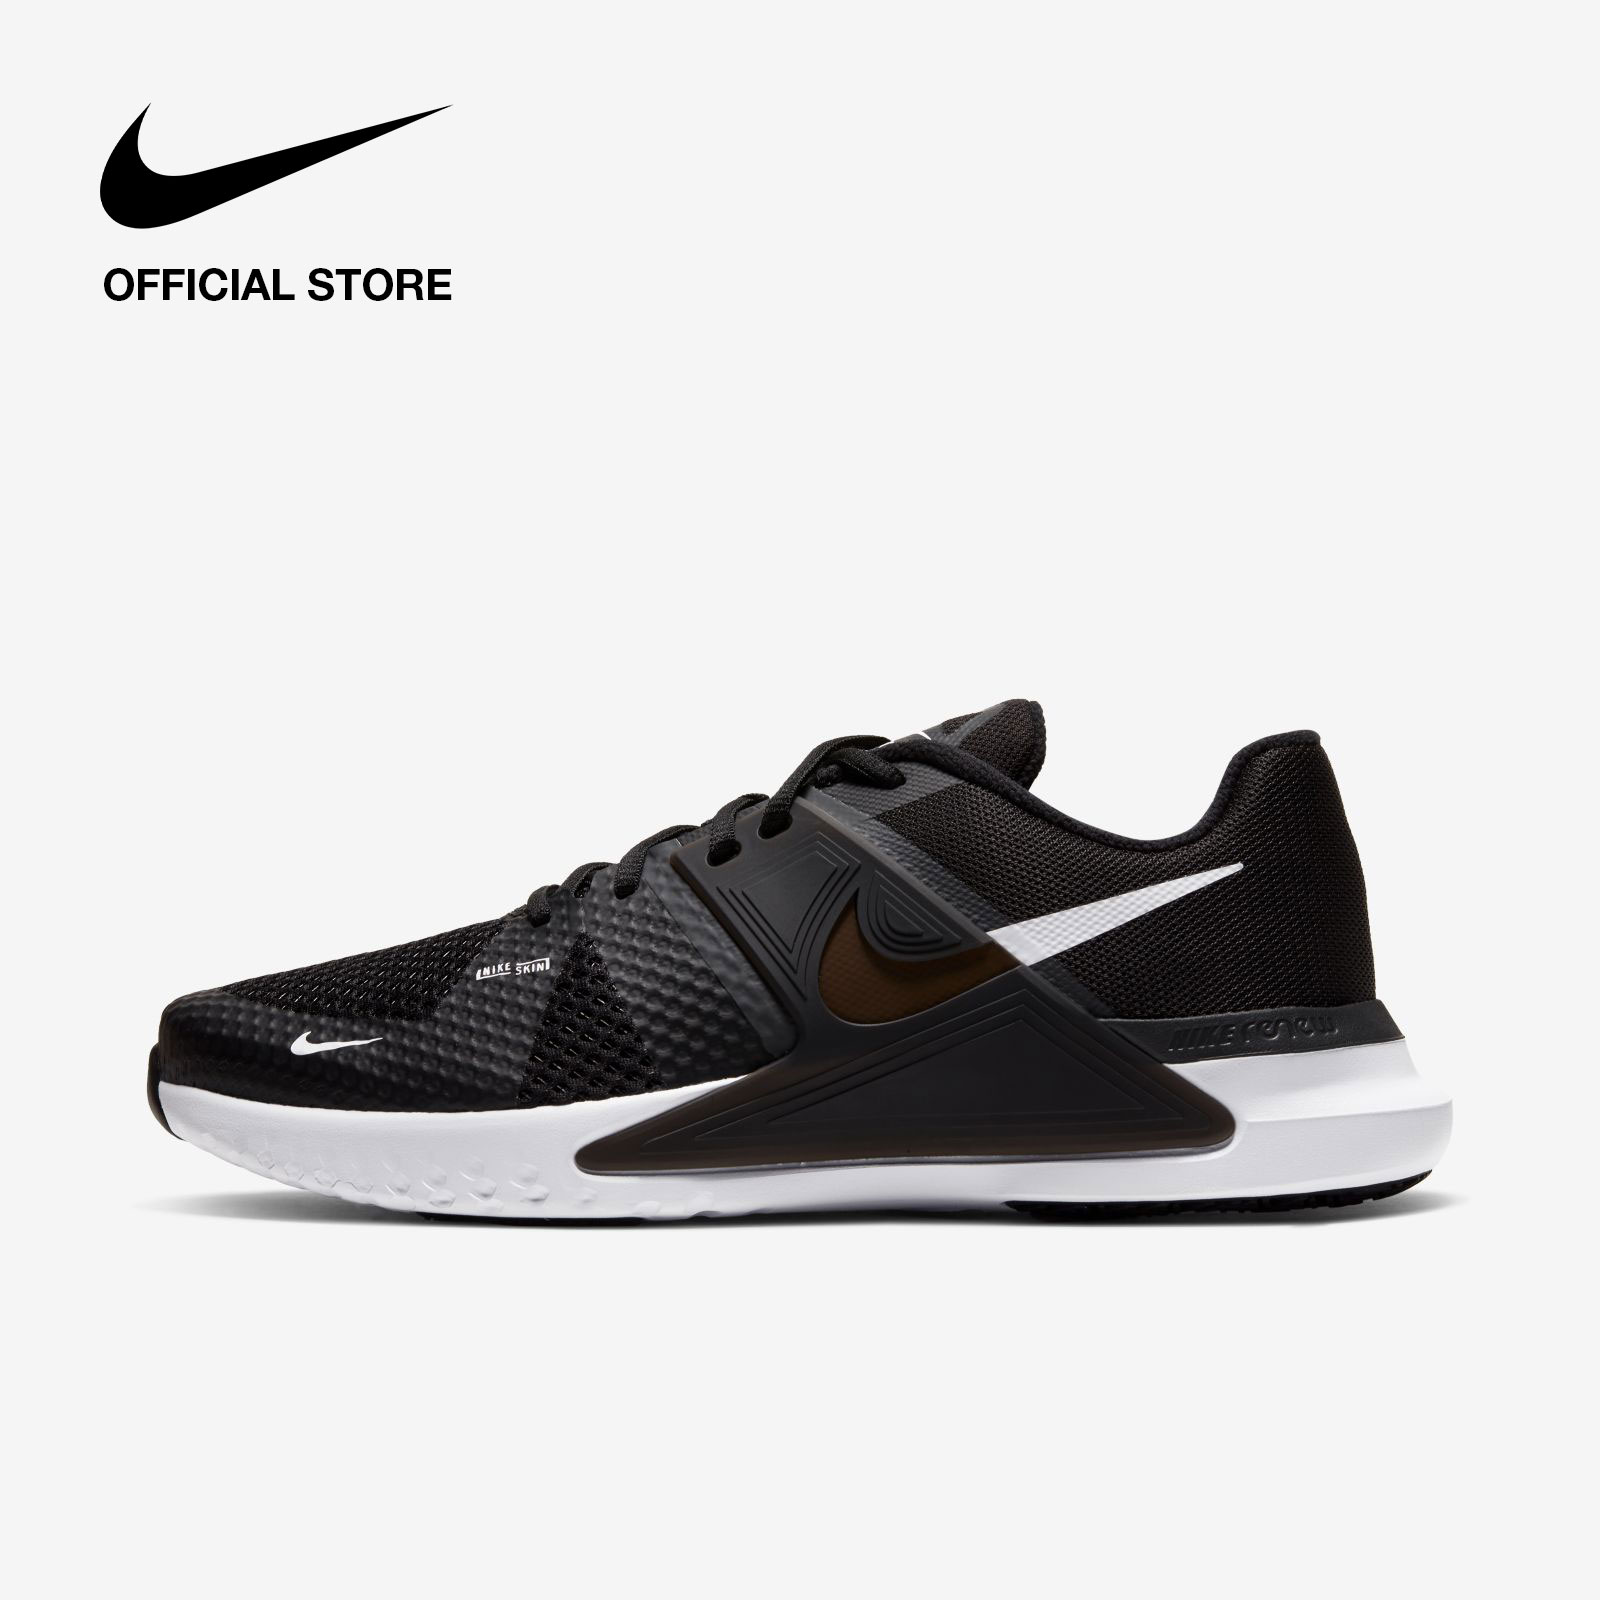 Nike Men's Renew Fusion Training Shoes - Black ไนกี้ รองเท้าเทรนนิ่งผู้ชาย รีนิว ฟิวชั่น - สีดำ